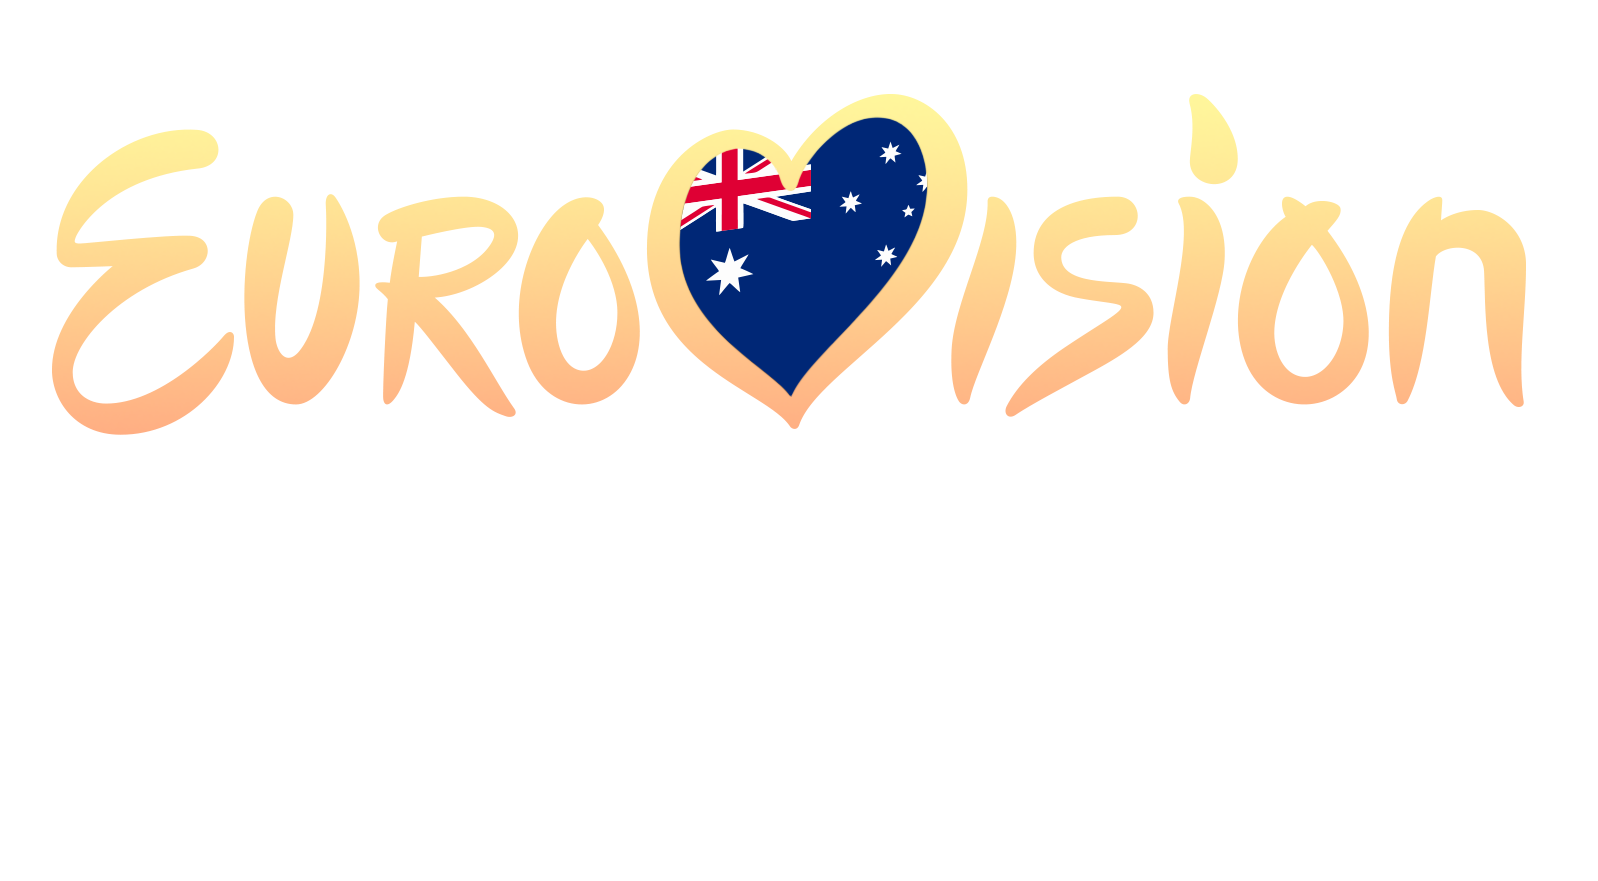 voyager band australia eurovision